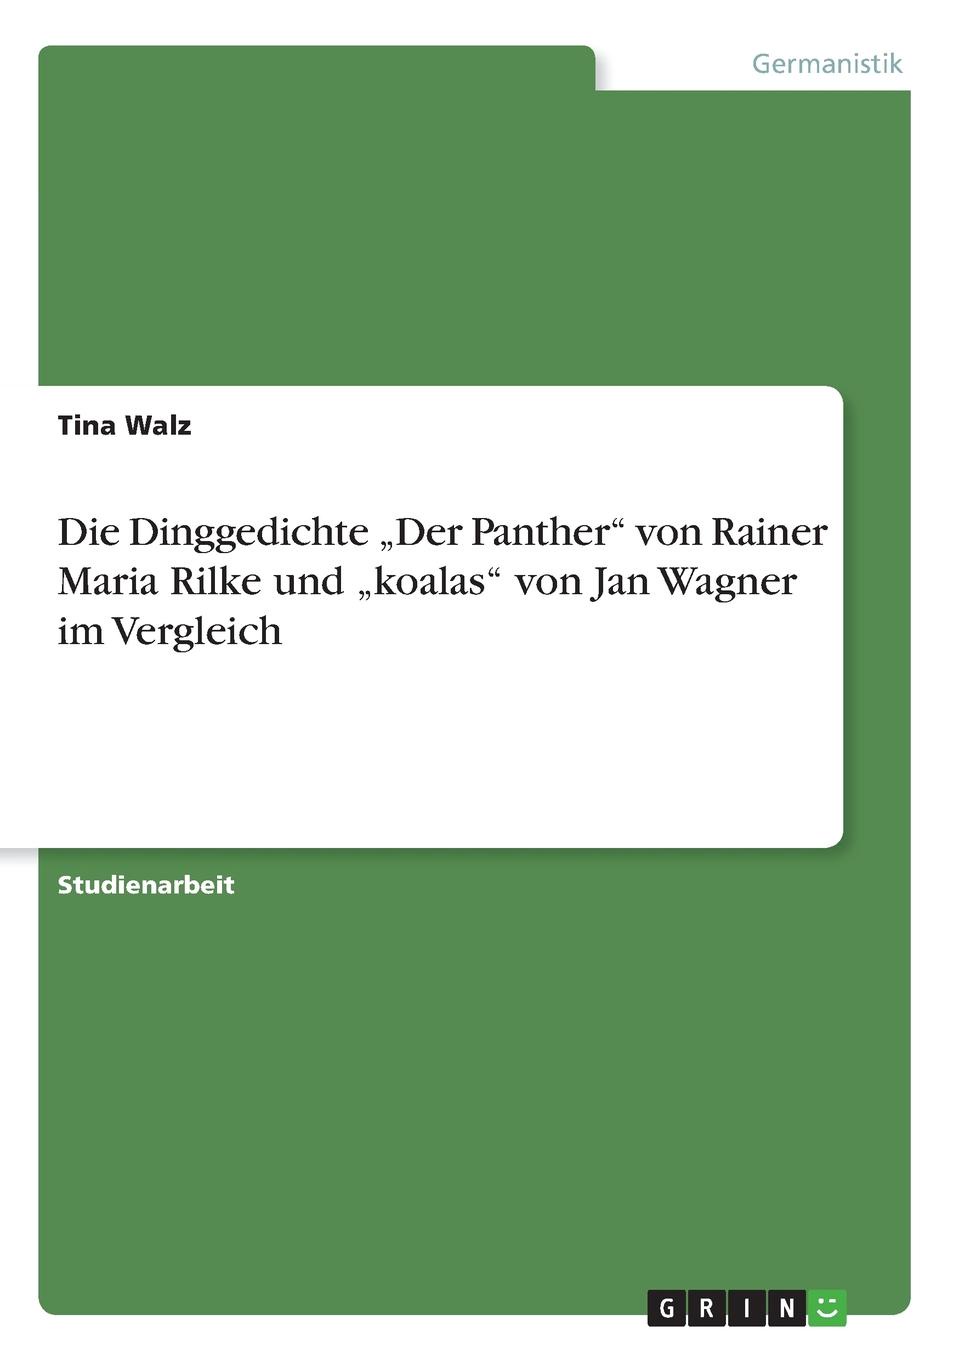 фото Die Dinggedichte .Der Panther" von Rainer Maria Rilke und .koalas" von Jan Wagner im Vergleich